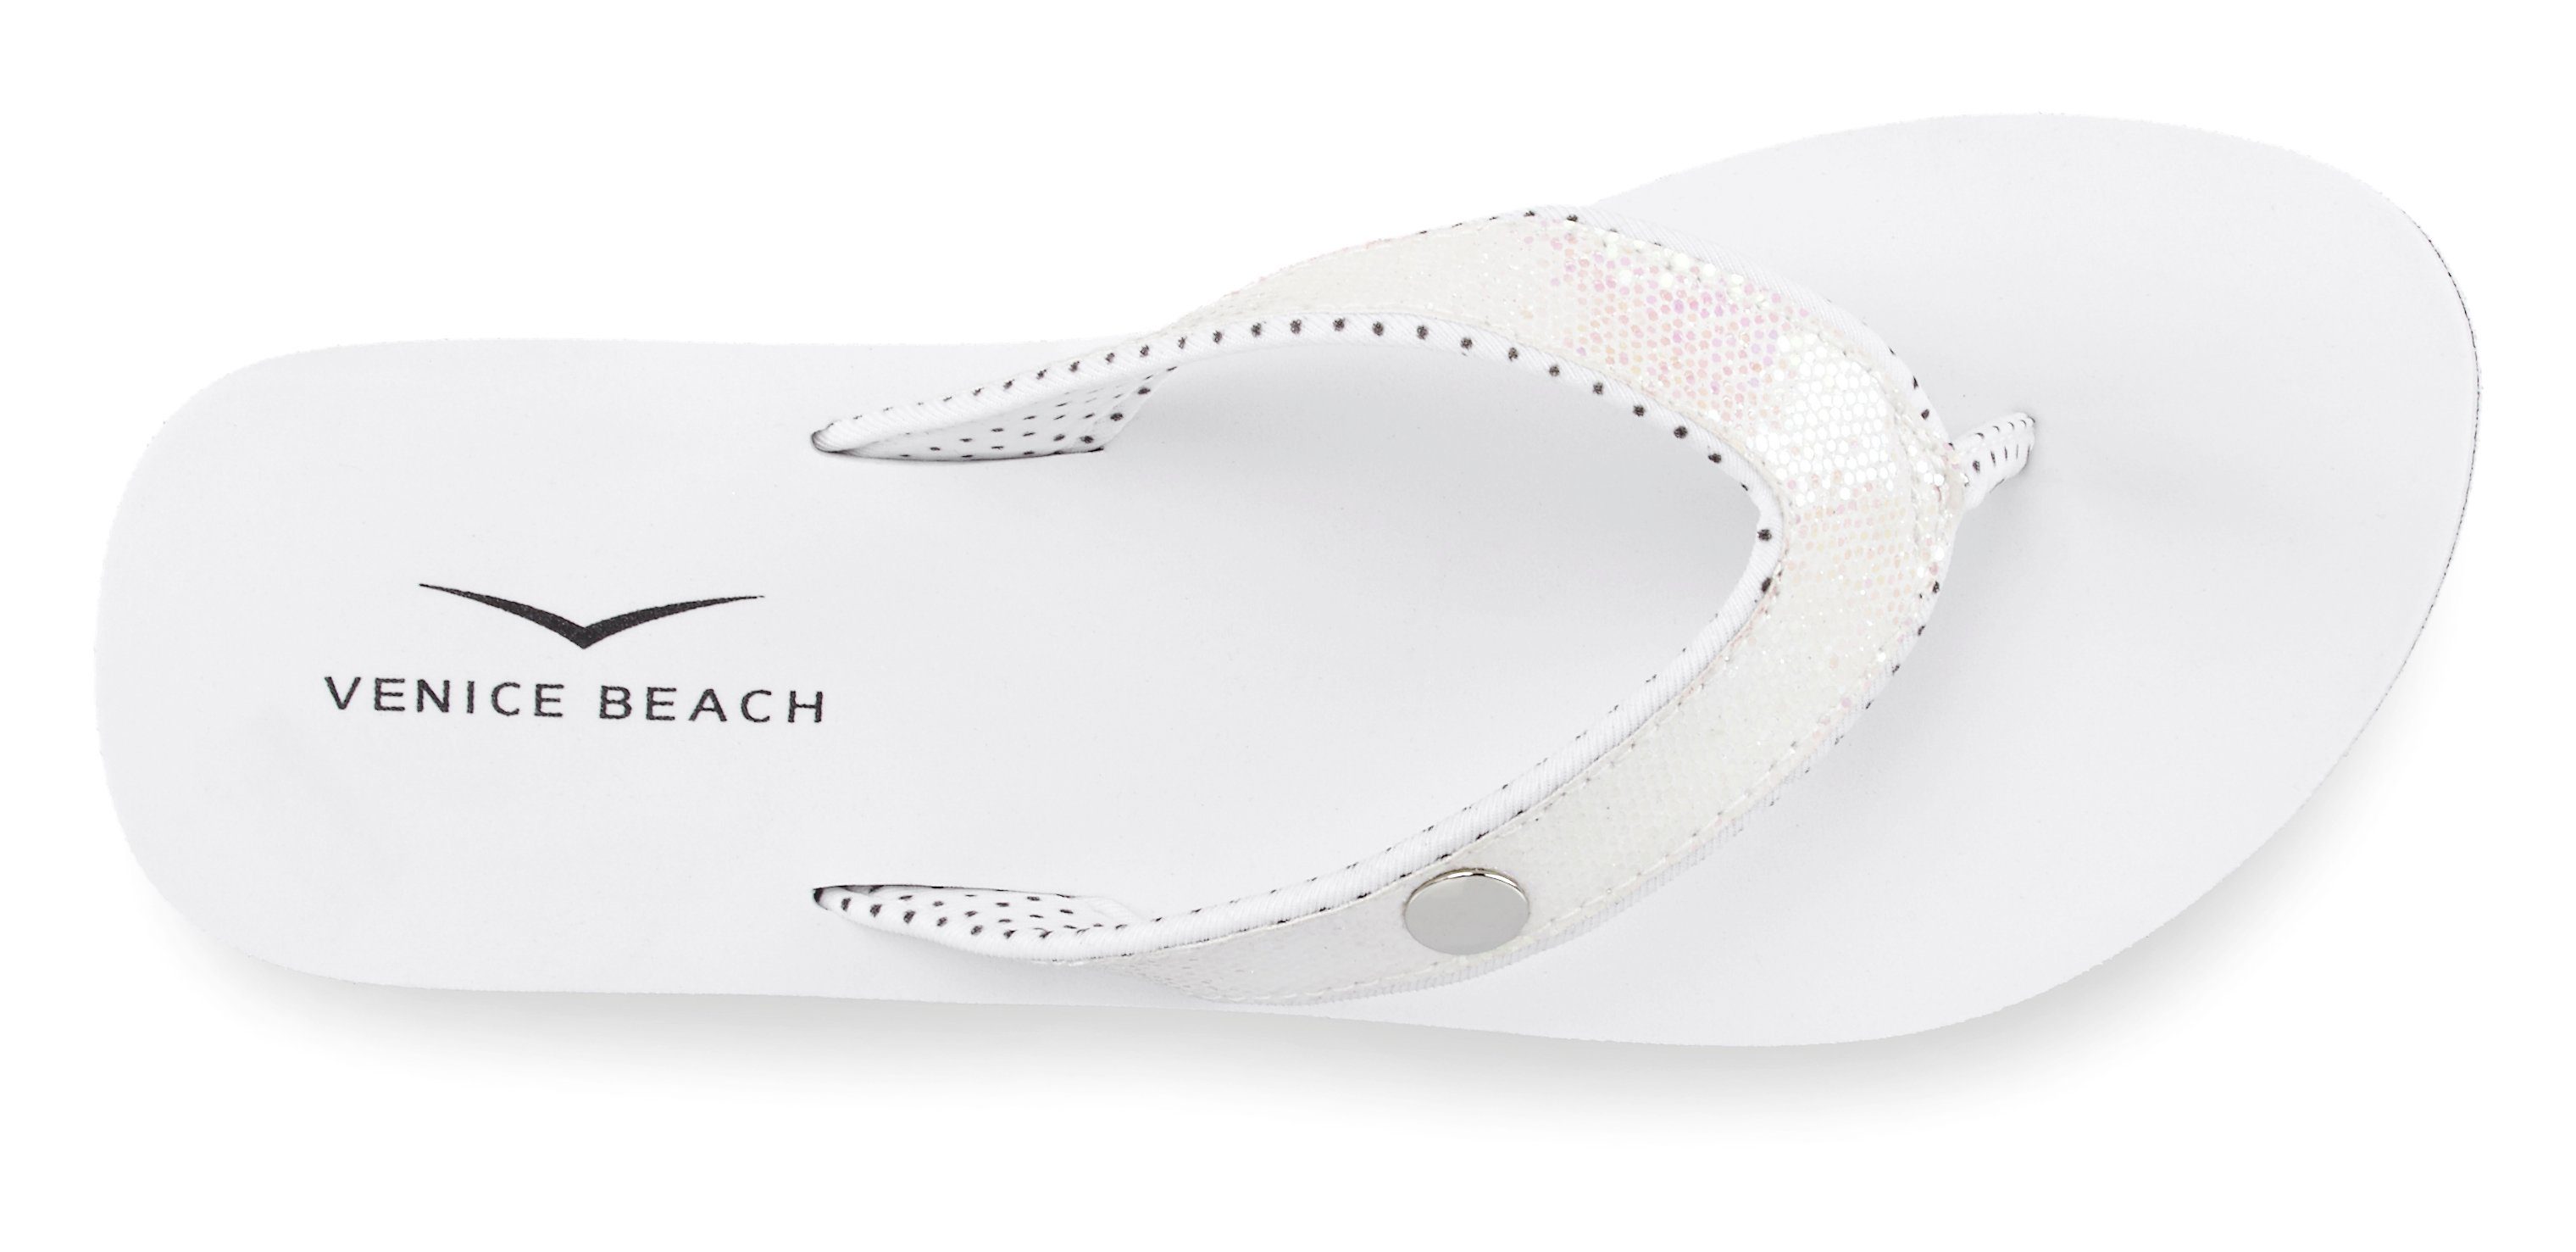 Venice Beach Badezehentrenner Sandale, Badeschuh mit Glitzerband weiß Pantolette, ultraleicht VEGAN